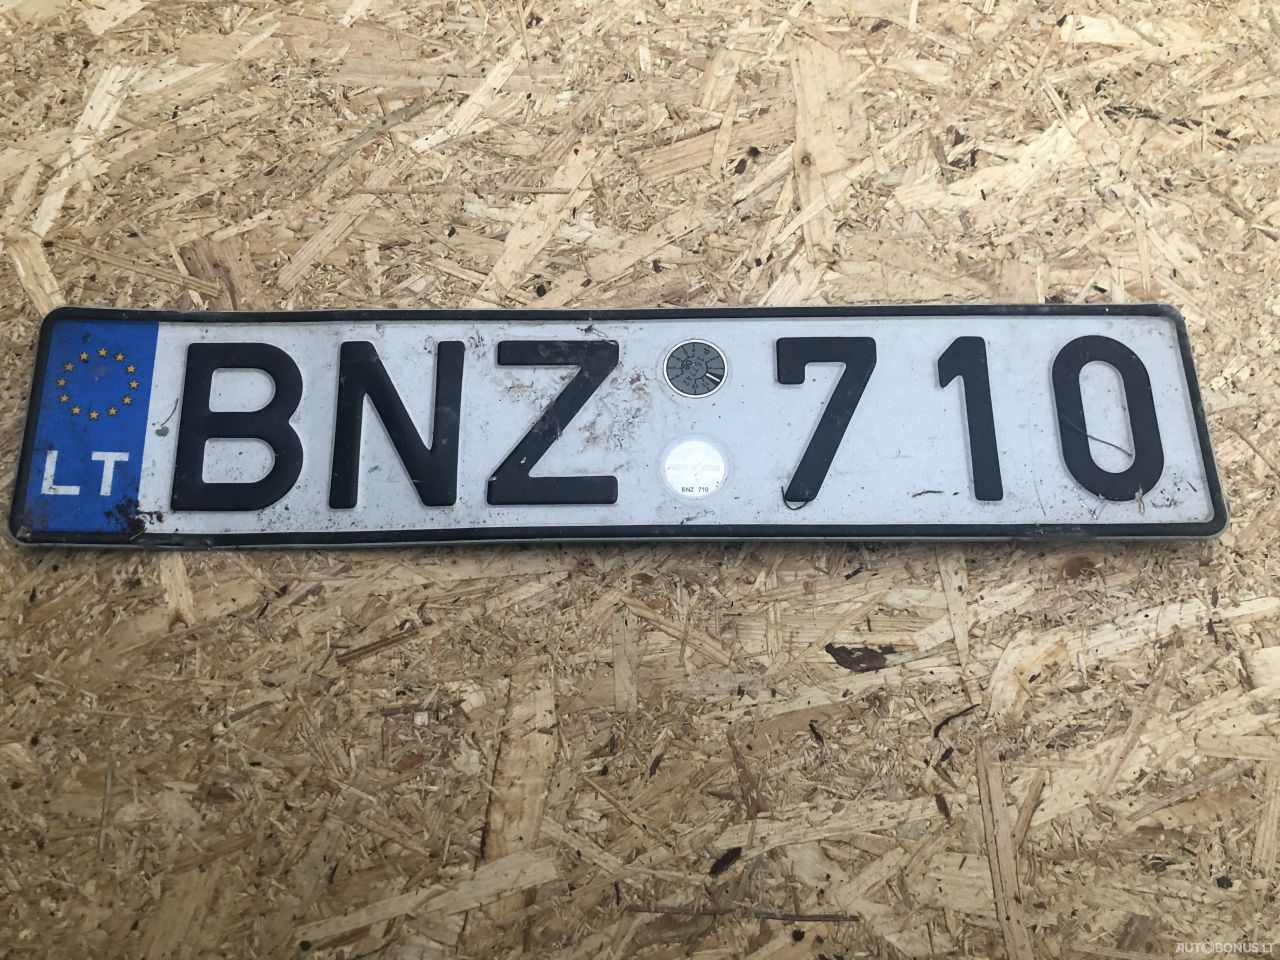  BNZ710